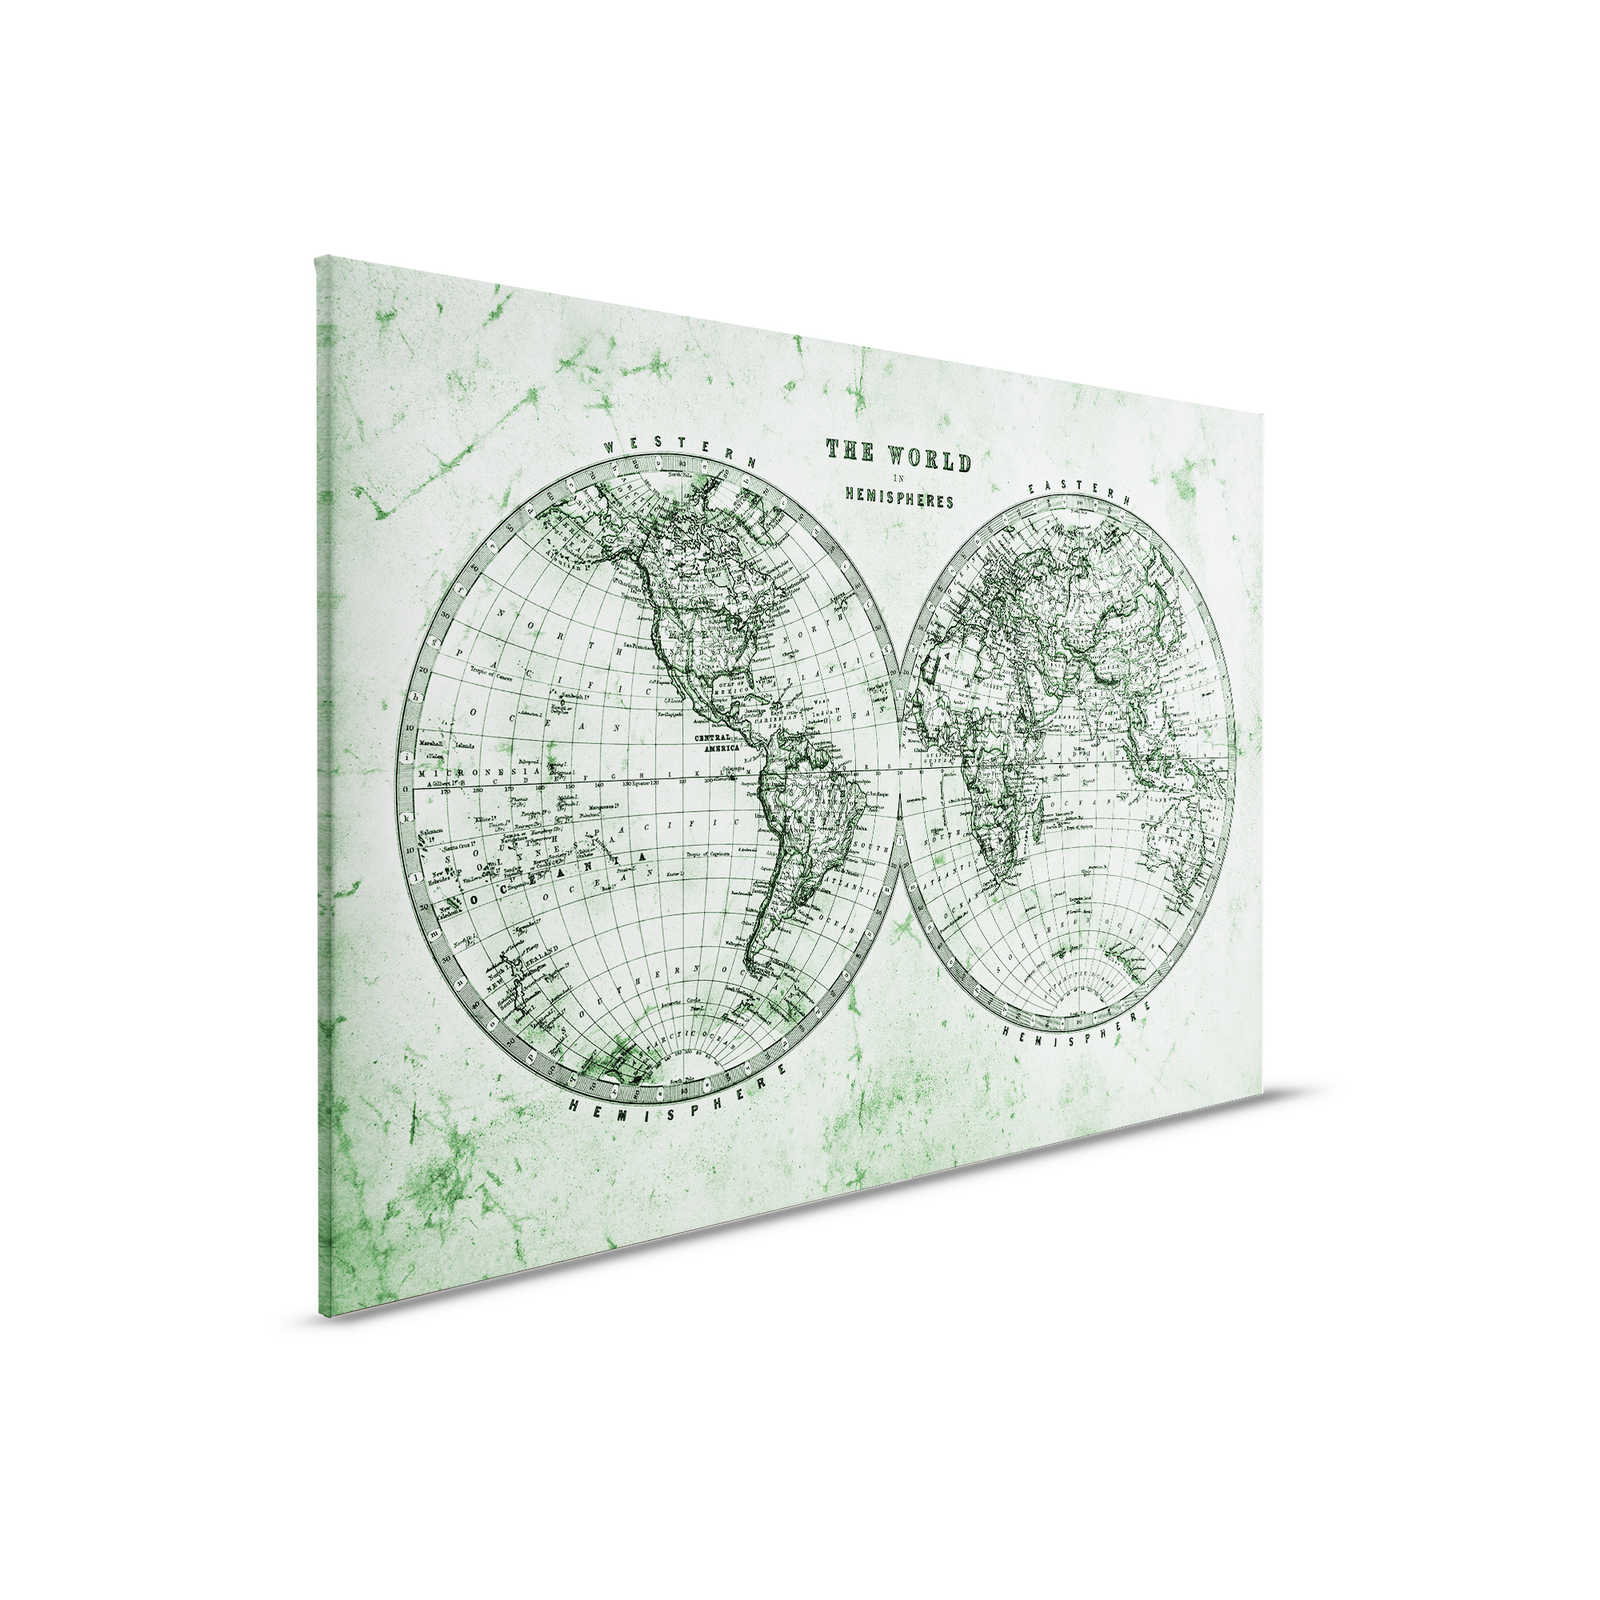         Leinwand mit Vintage Weltkarte in Hemisphären | grün, grau, weiß – 0,90 m x 0,60 m
    